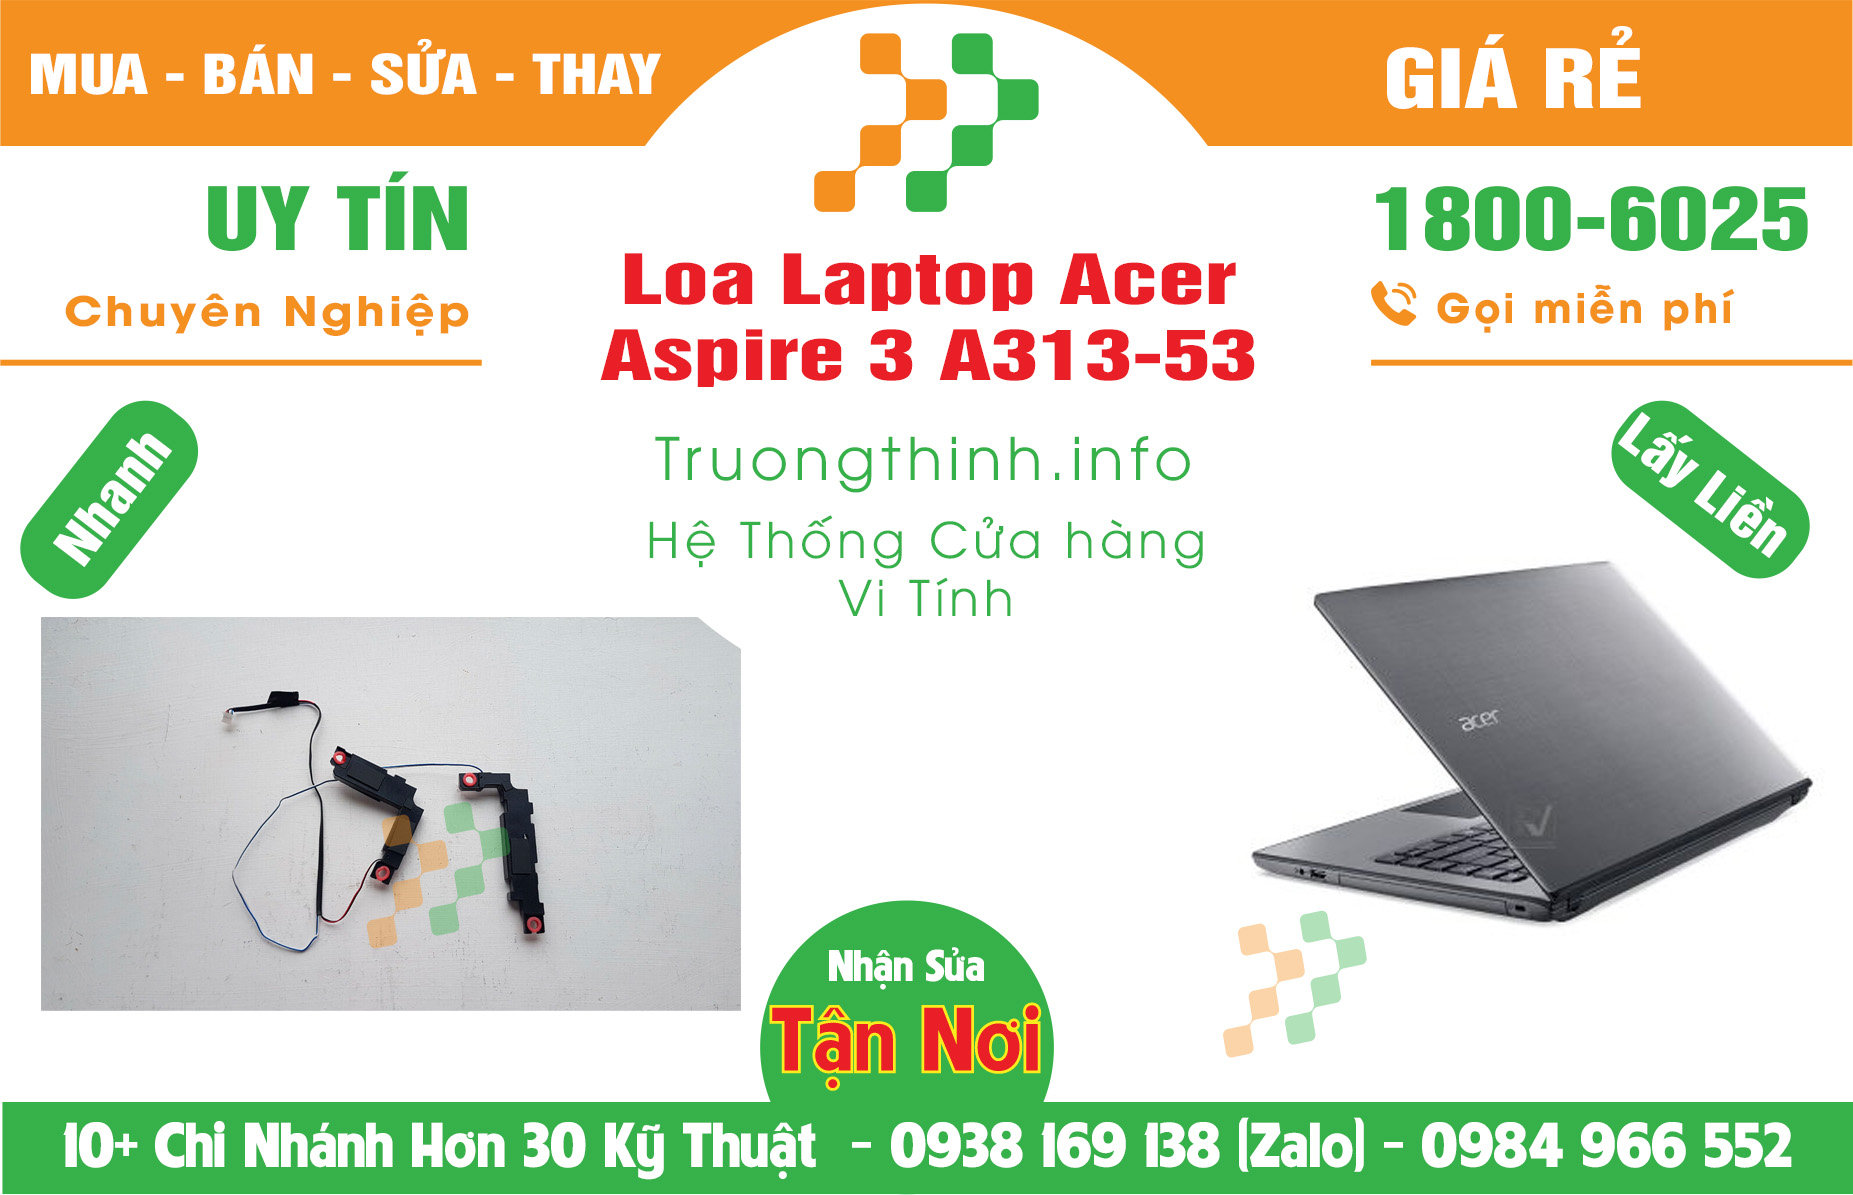 Mua Bán Loa Laptop Acer Aspire 3 A313-53 Giá Rẻ | Máy Tính Trường Thịnh Giá Rẻ